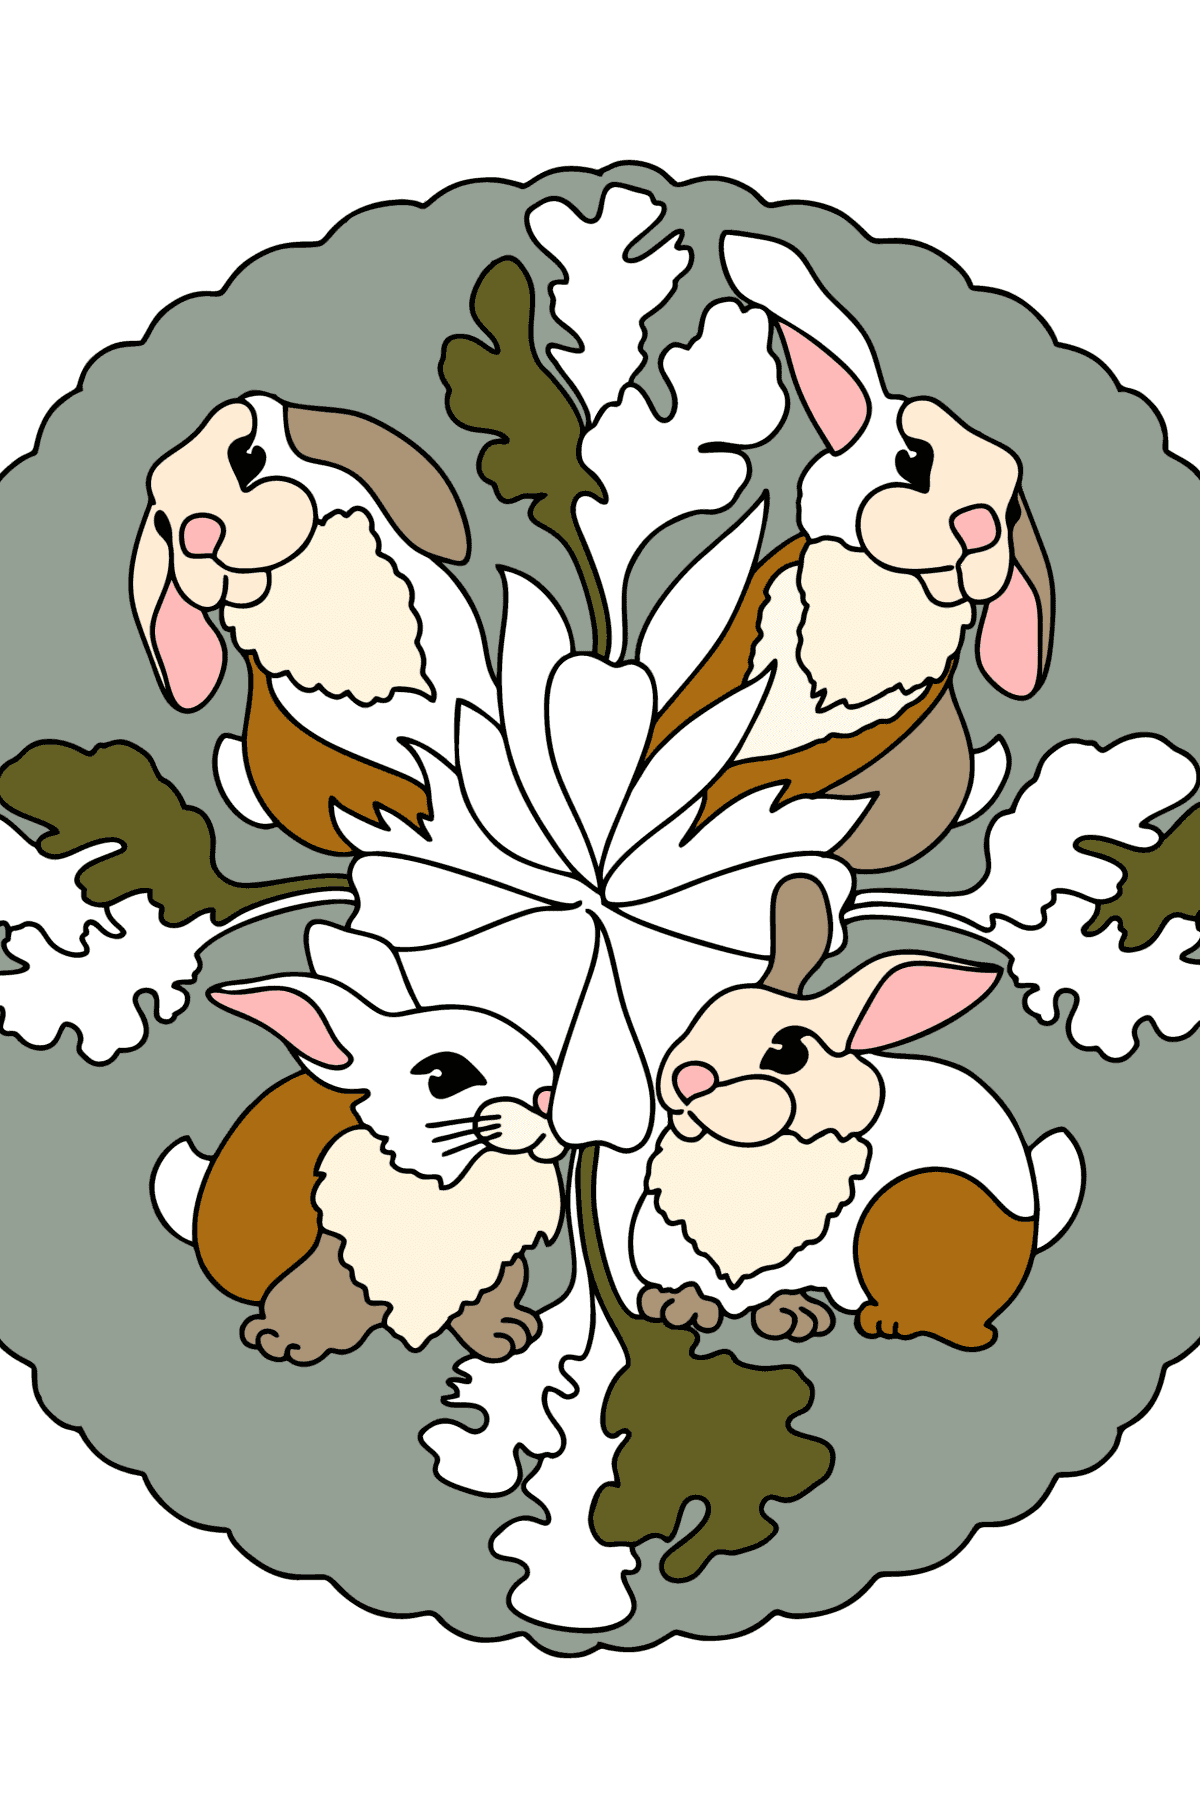 Tegning til fargelegging mandala kanin - Tegninger til fargelegging for barn